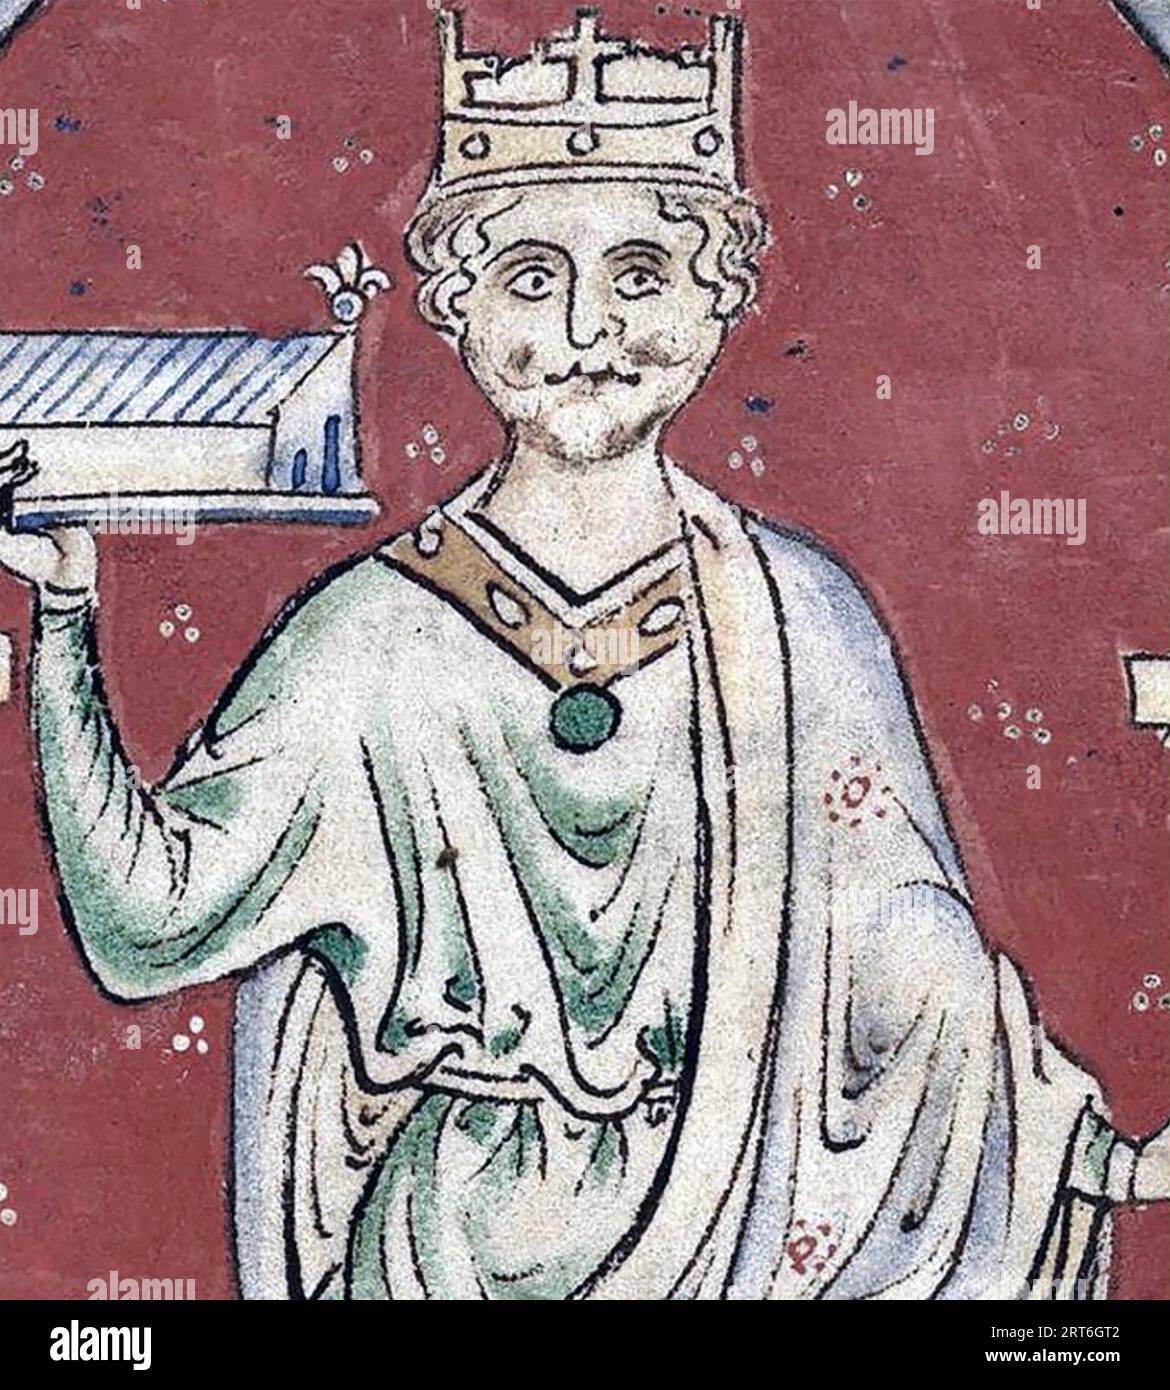 RE GUGLIELMO II D'INGHILTERRA (c 1057-1100) dettaglio tratto dalla Historia Anglorum di Matteo Paris intorno al 1253 Foto Stock